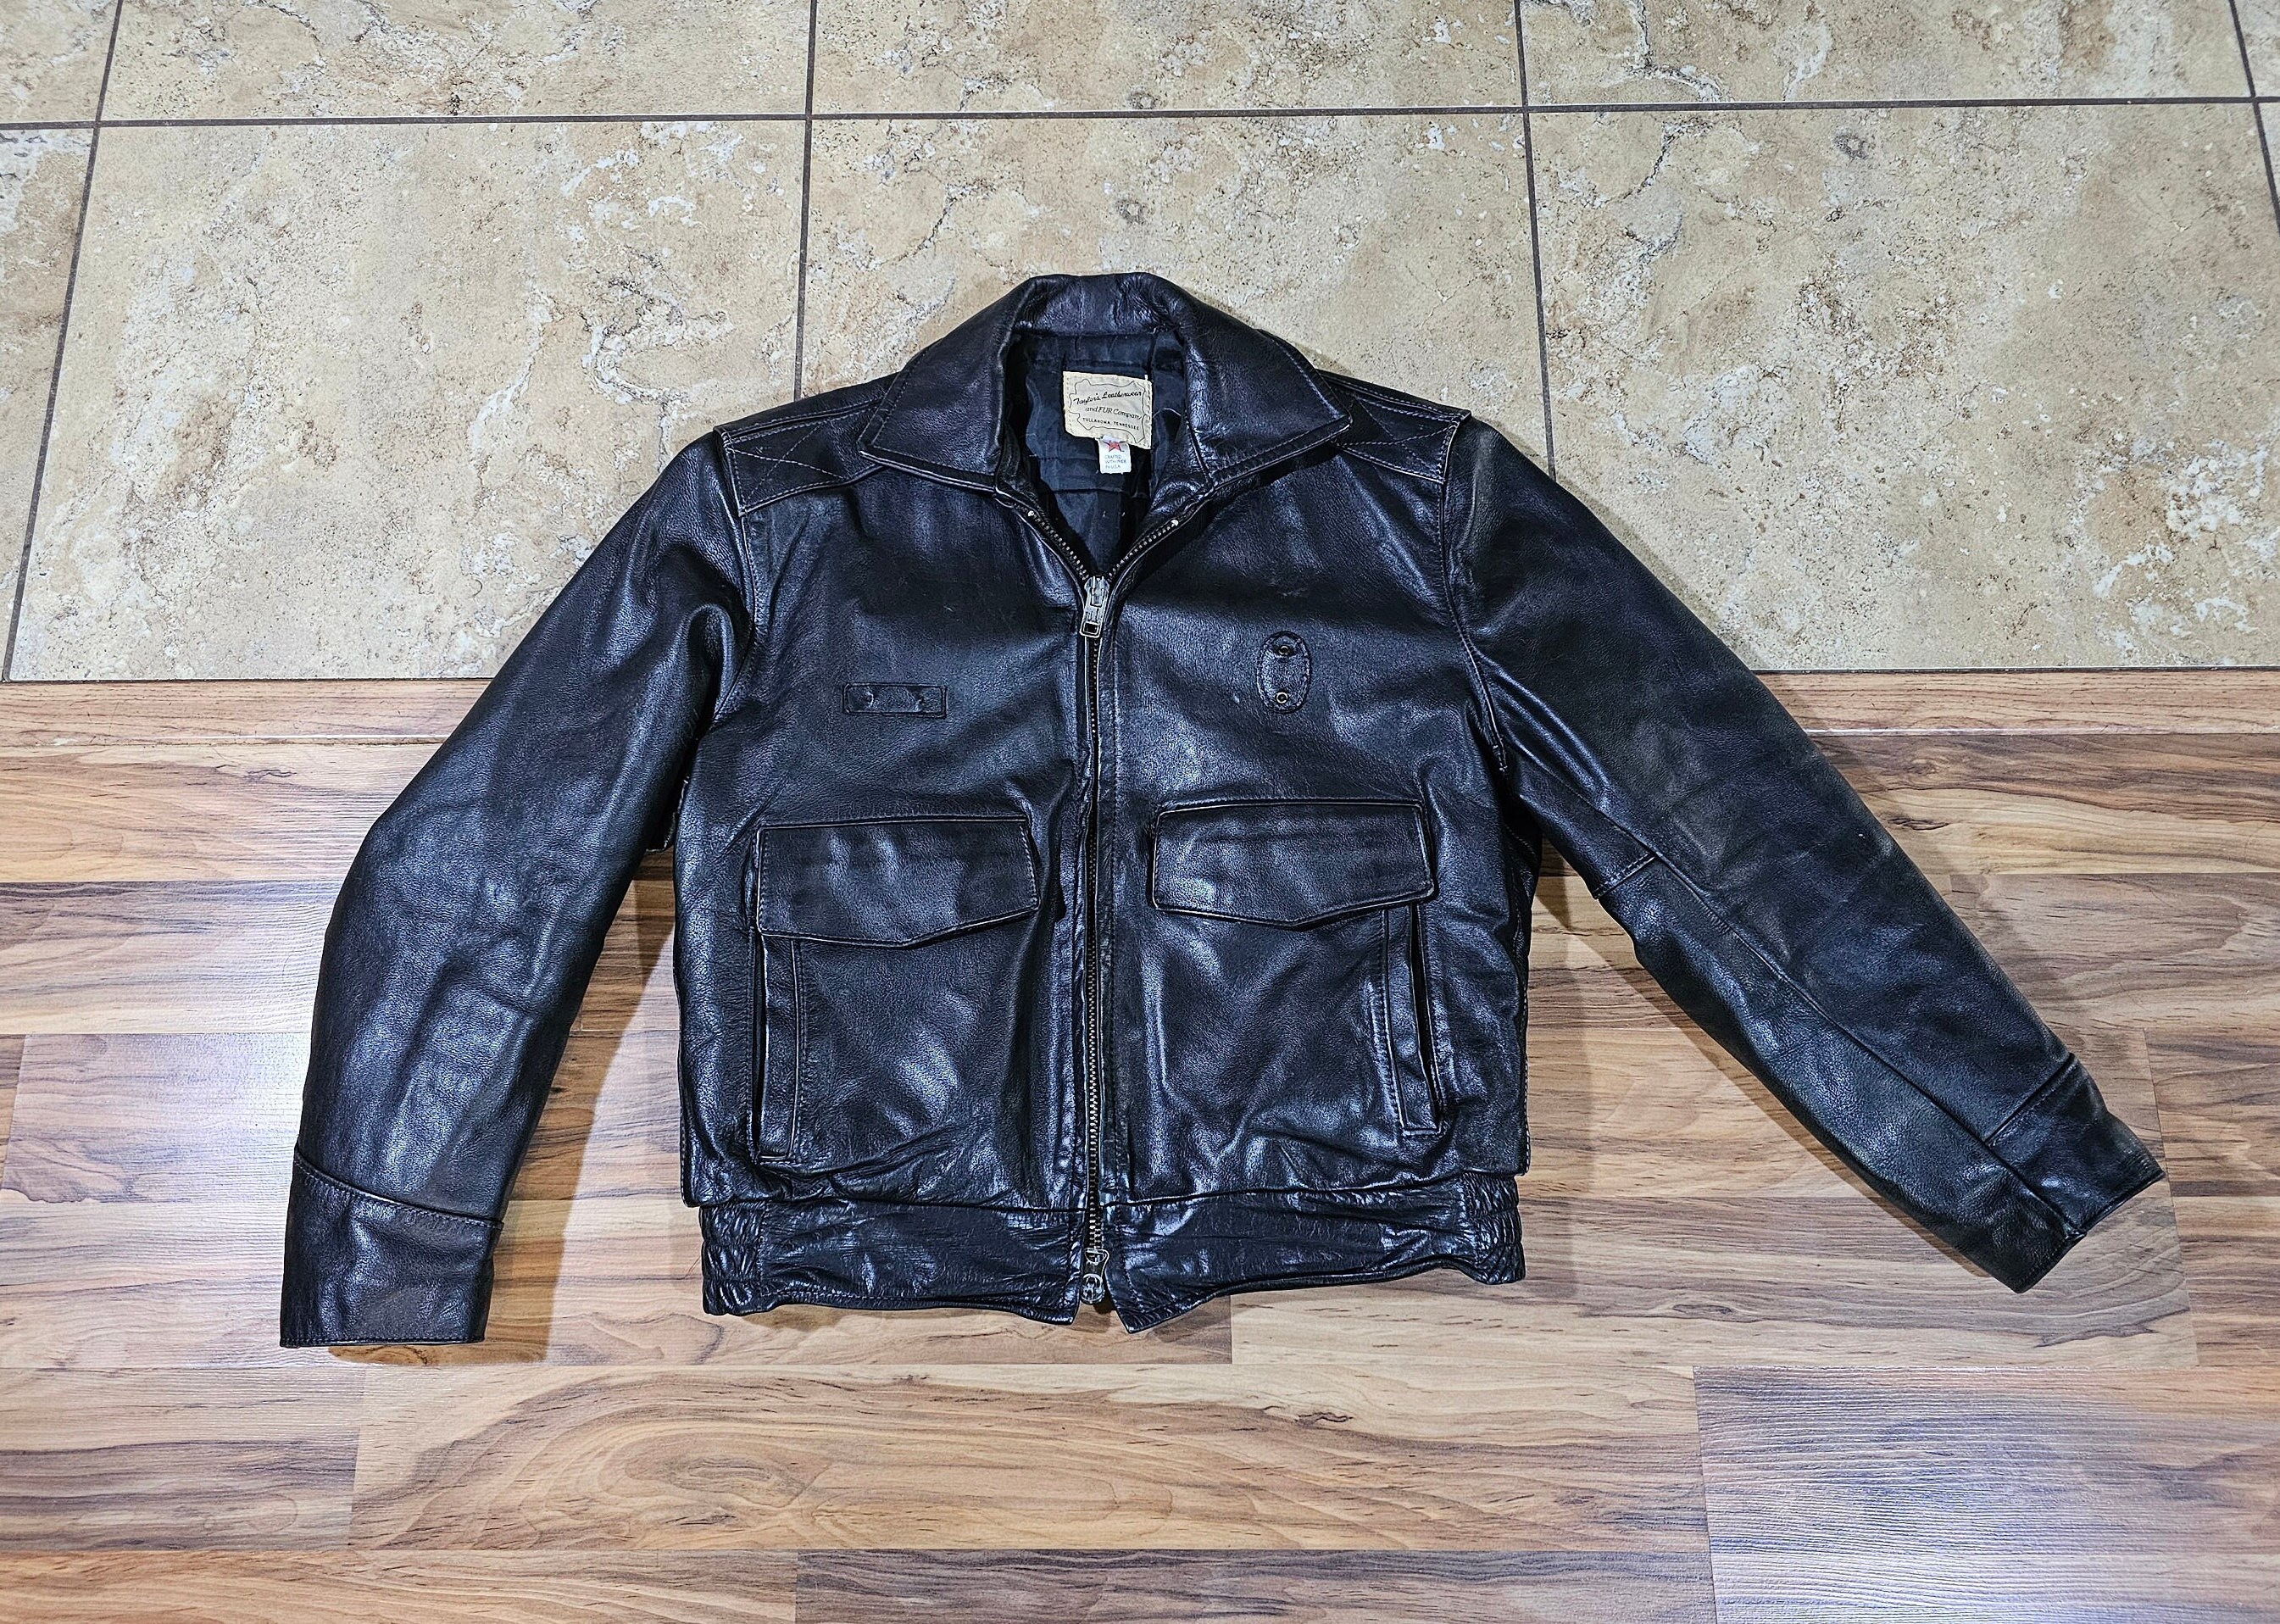 Vintage London Leatherware Diamond Studded Leather Moto Jacket